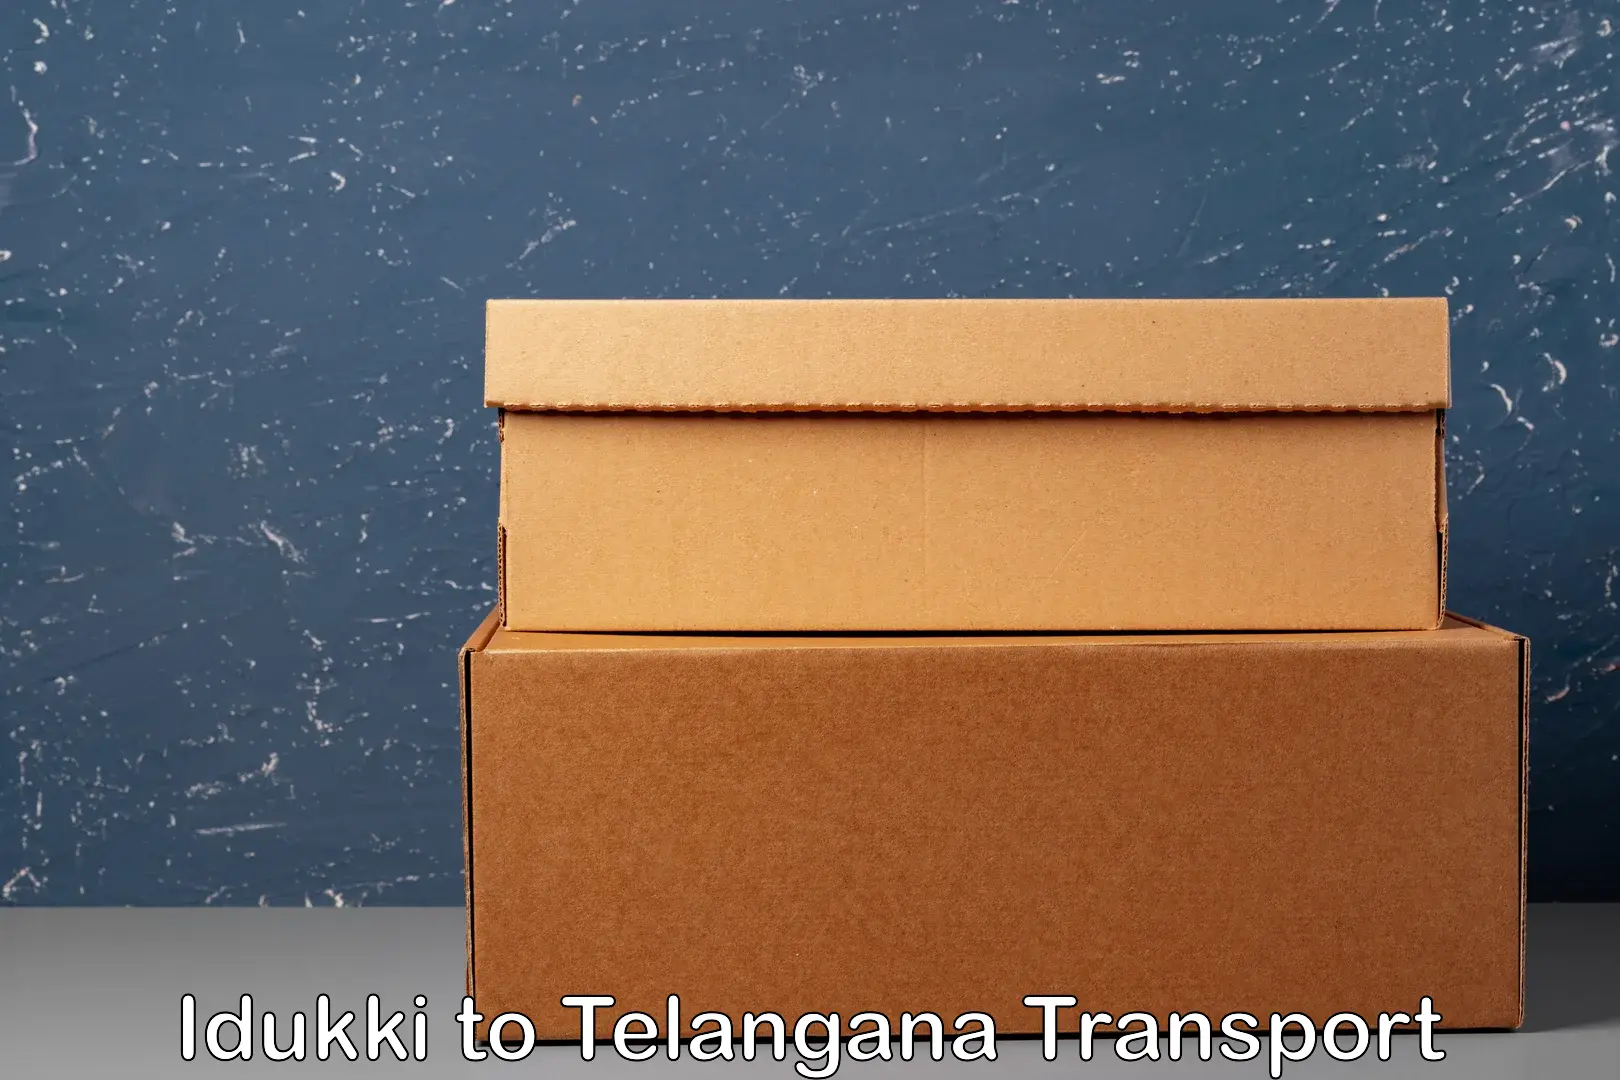 Transport in sharing Idukki to Madhavaram